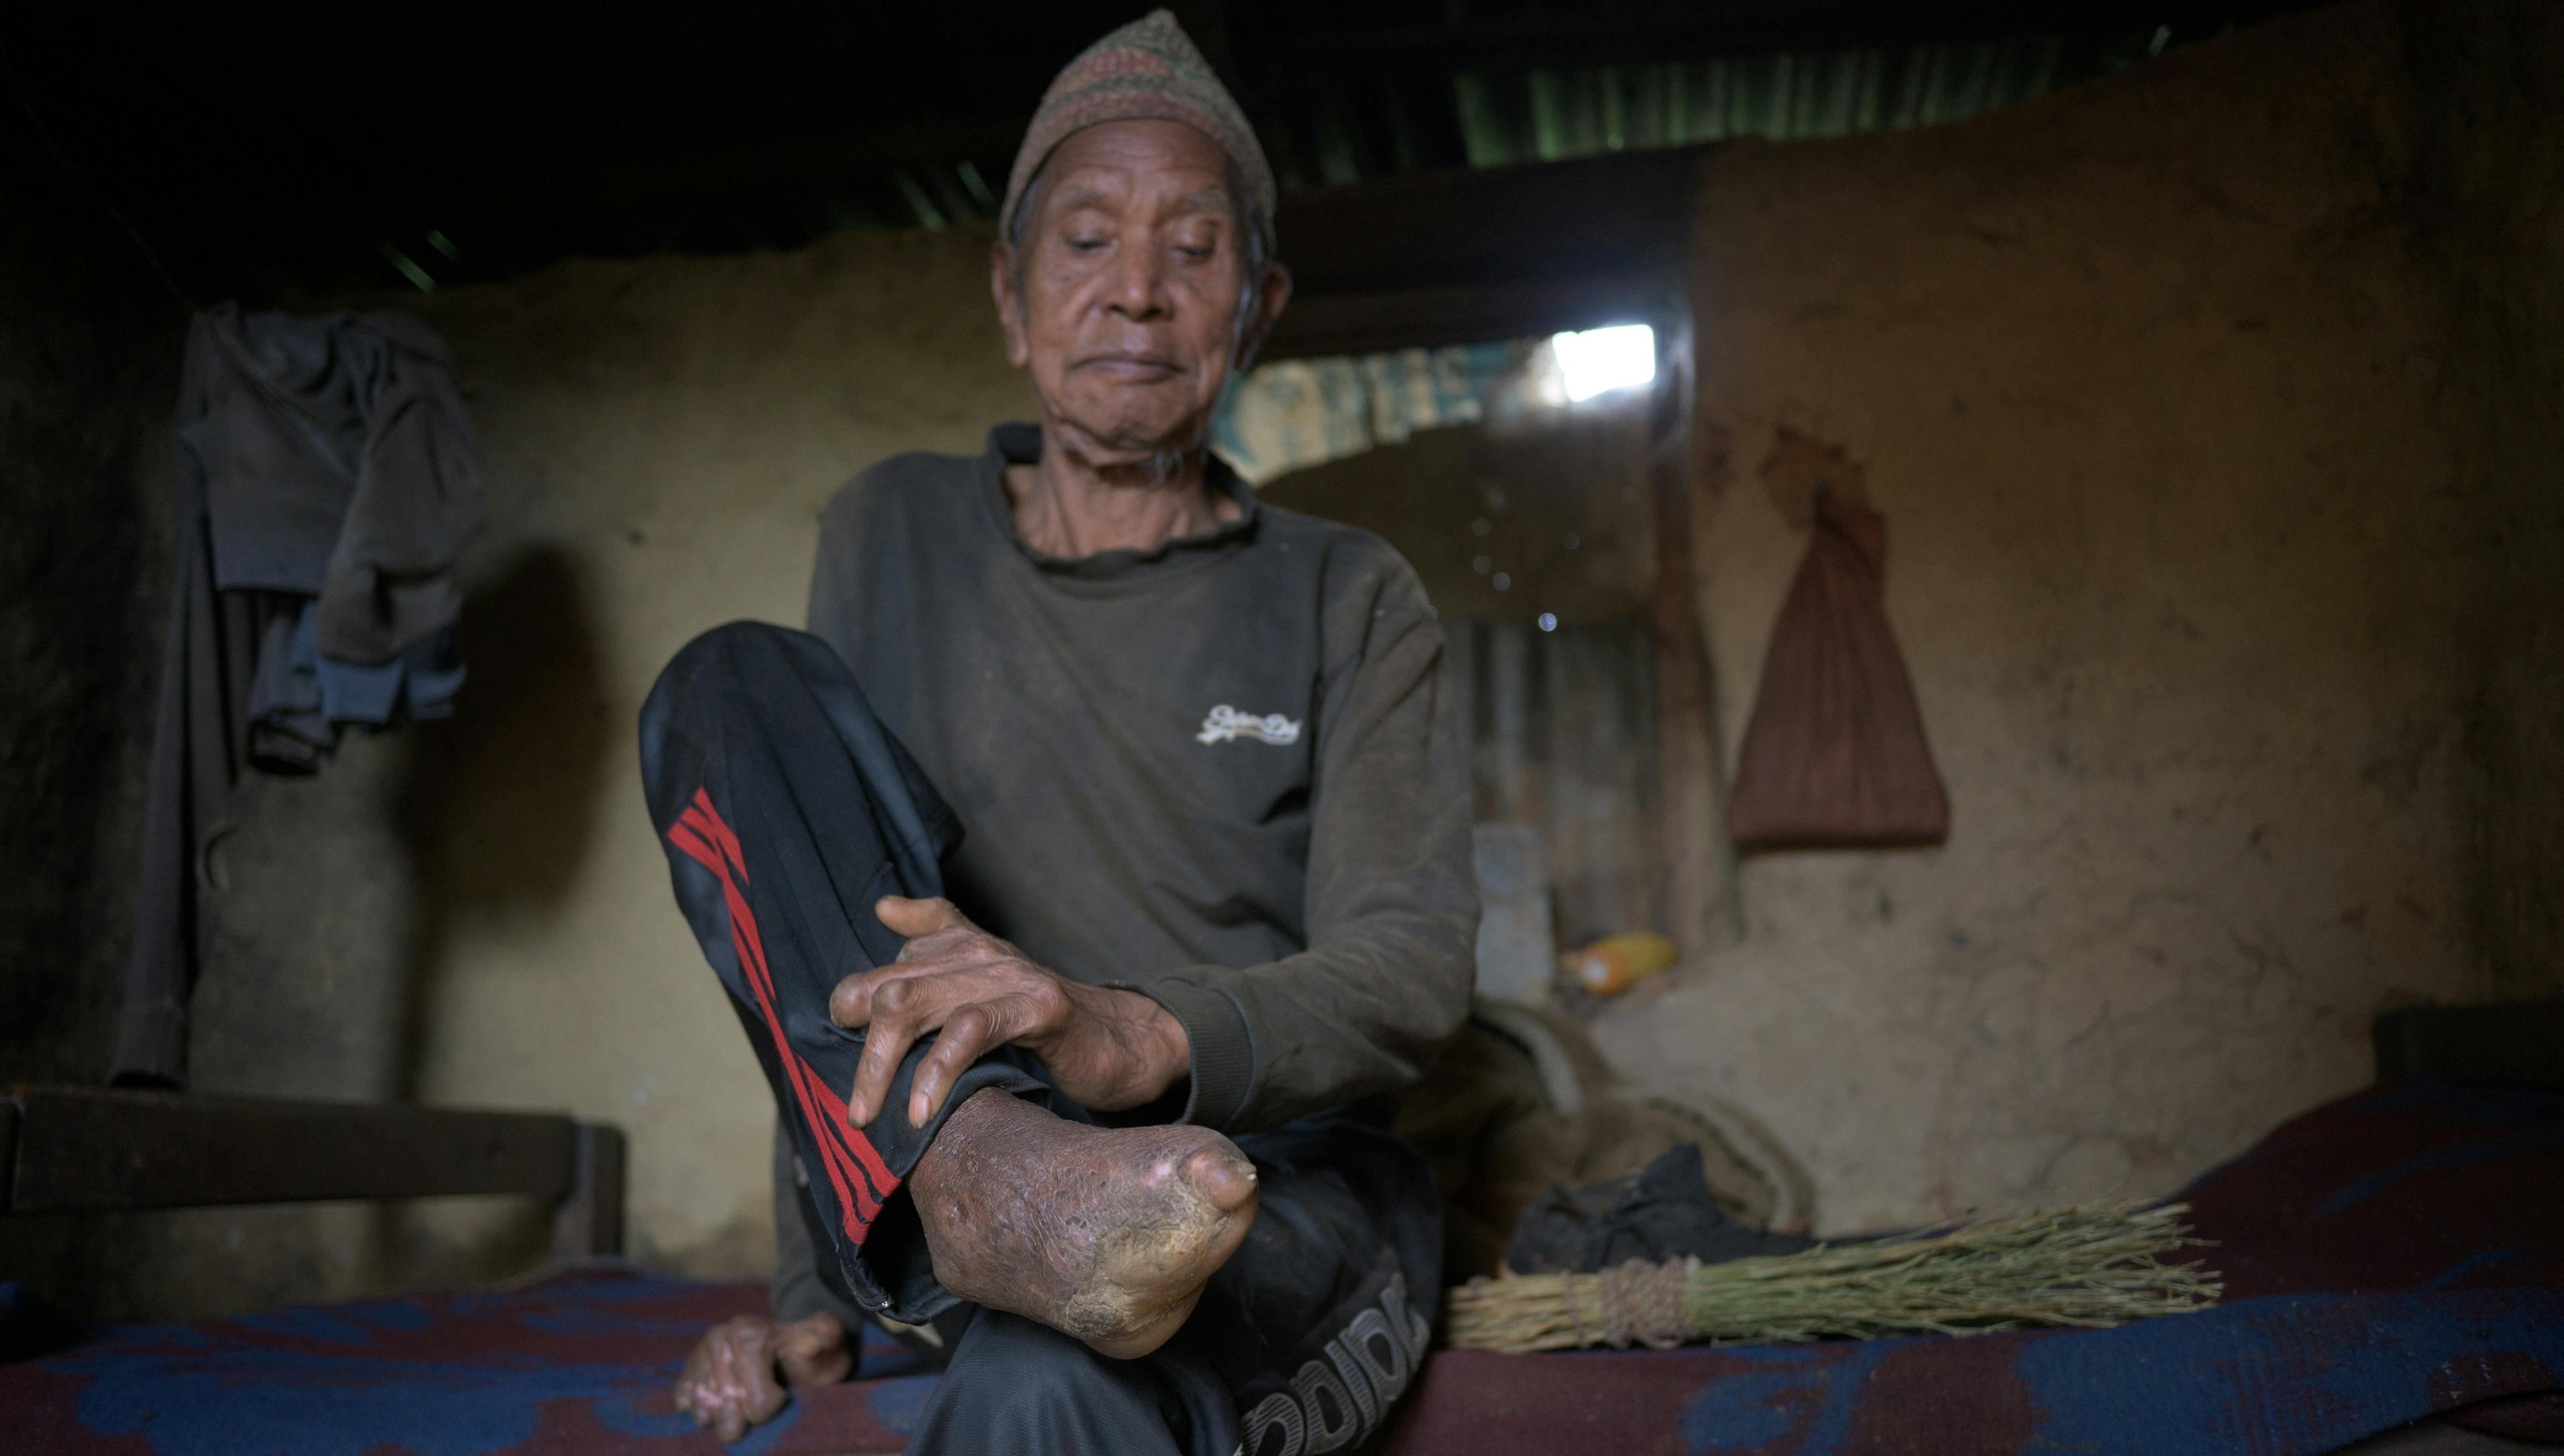 Bal Bhadadur Danuwar est assis sur un lit et tient son pied sans orteils et ses mains blessées dans le cadre.